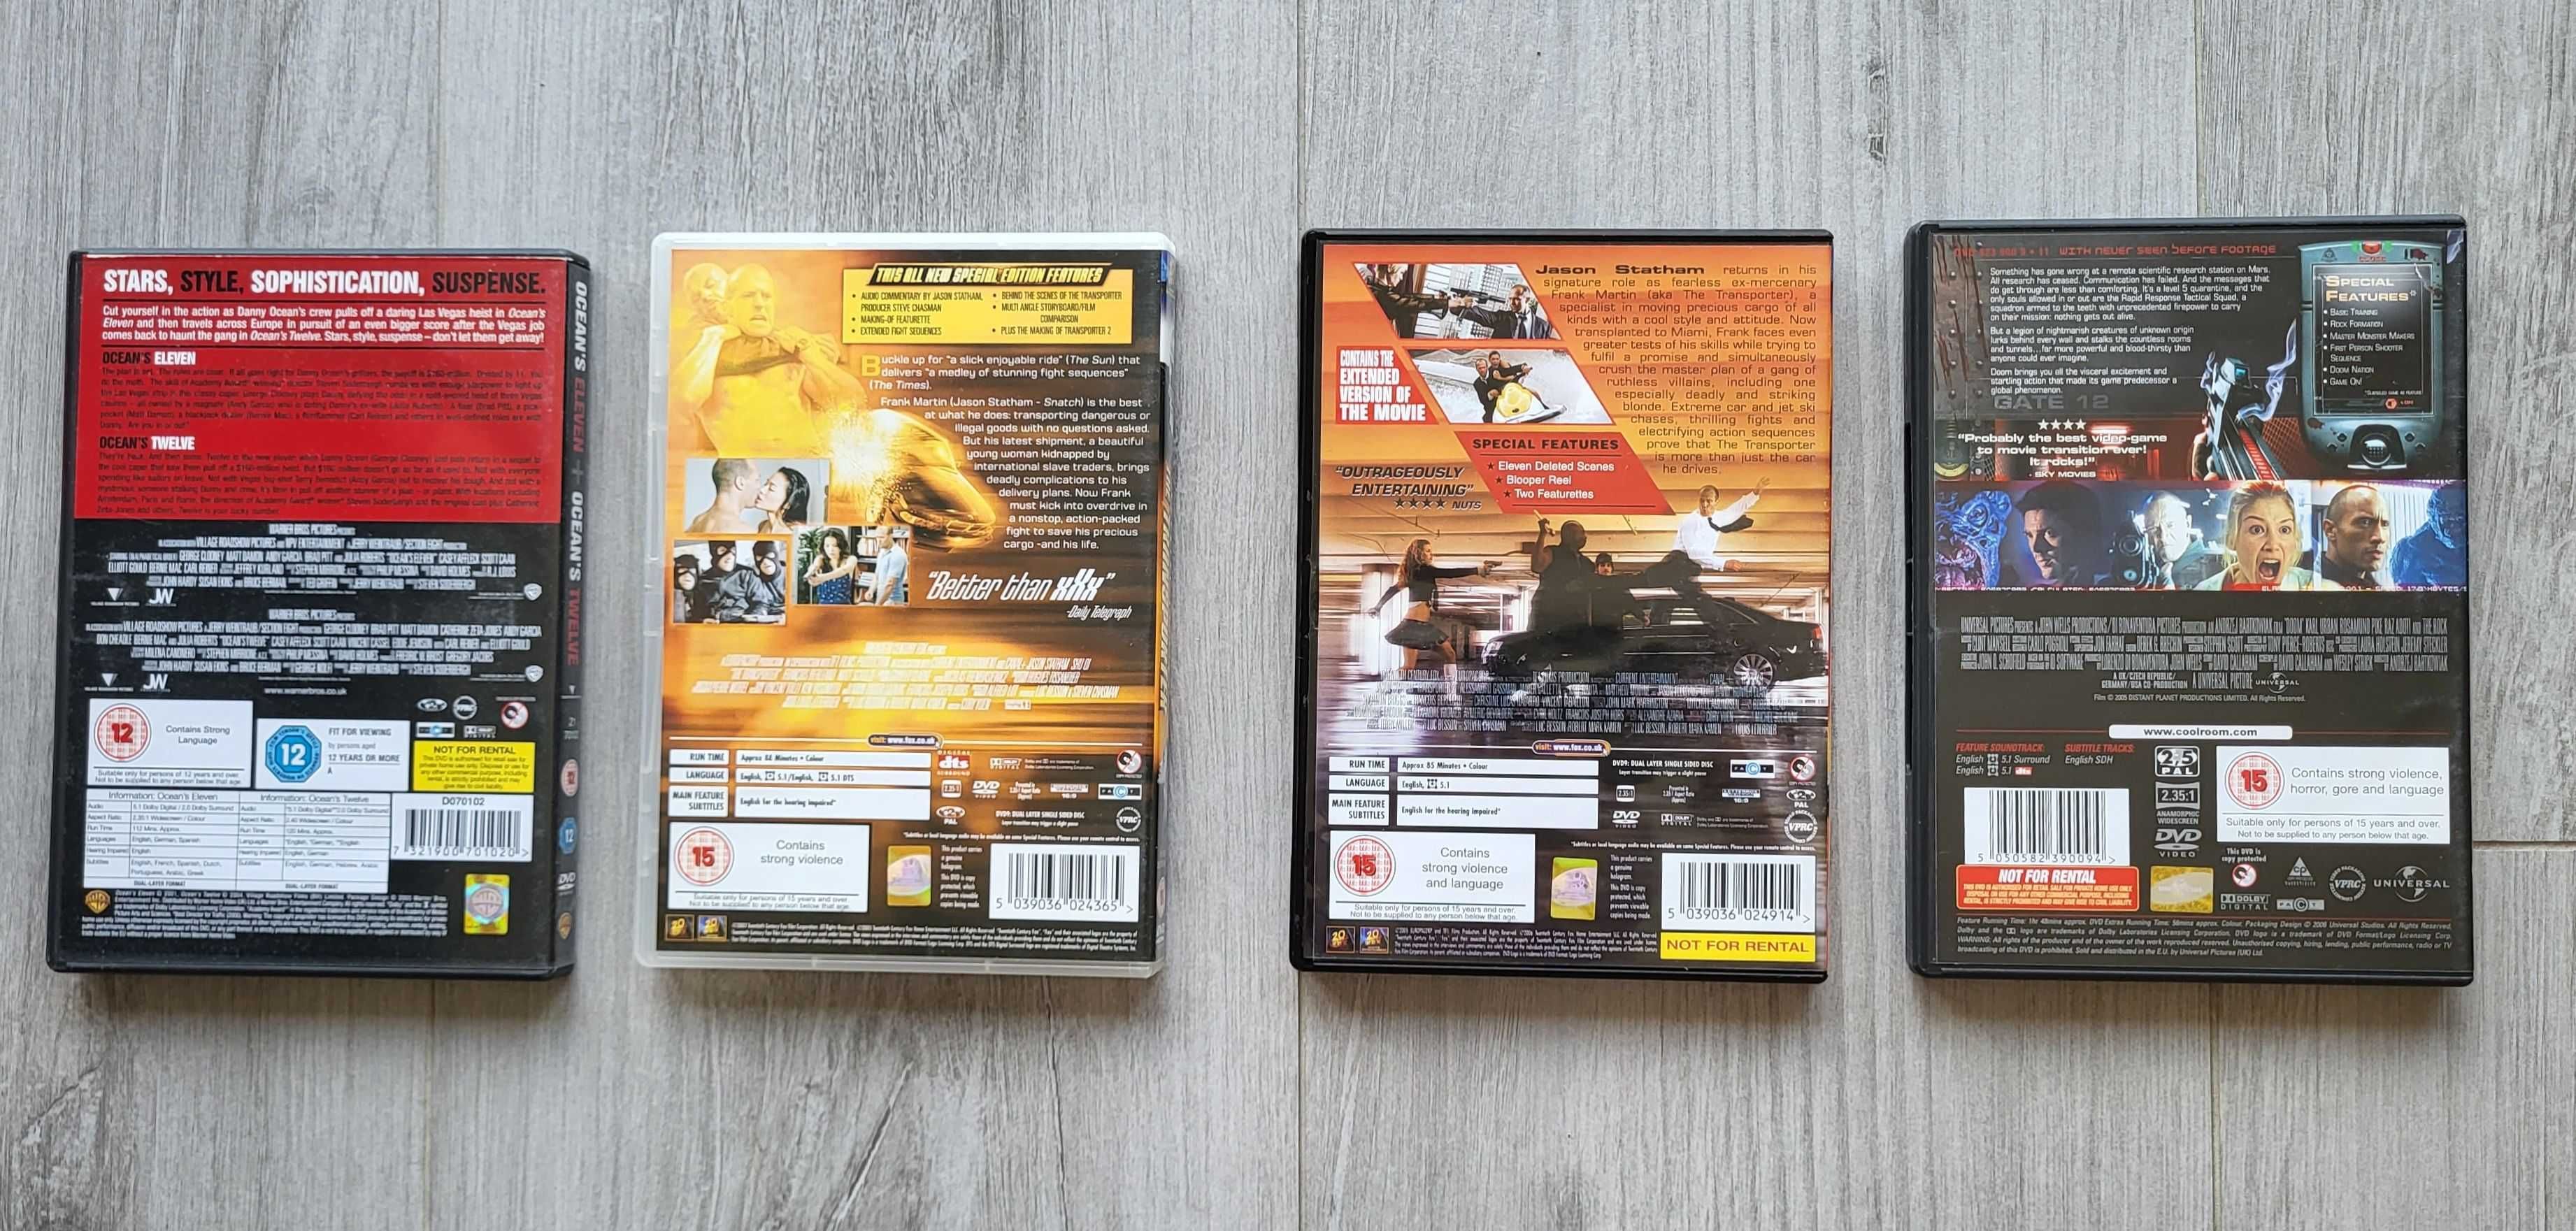 Filmy DVD (wersje anglojęzyczne) - pakiet 4 filmów akcji